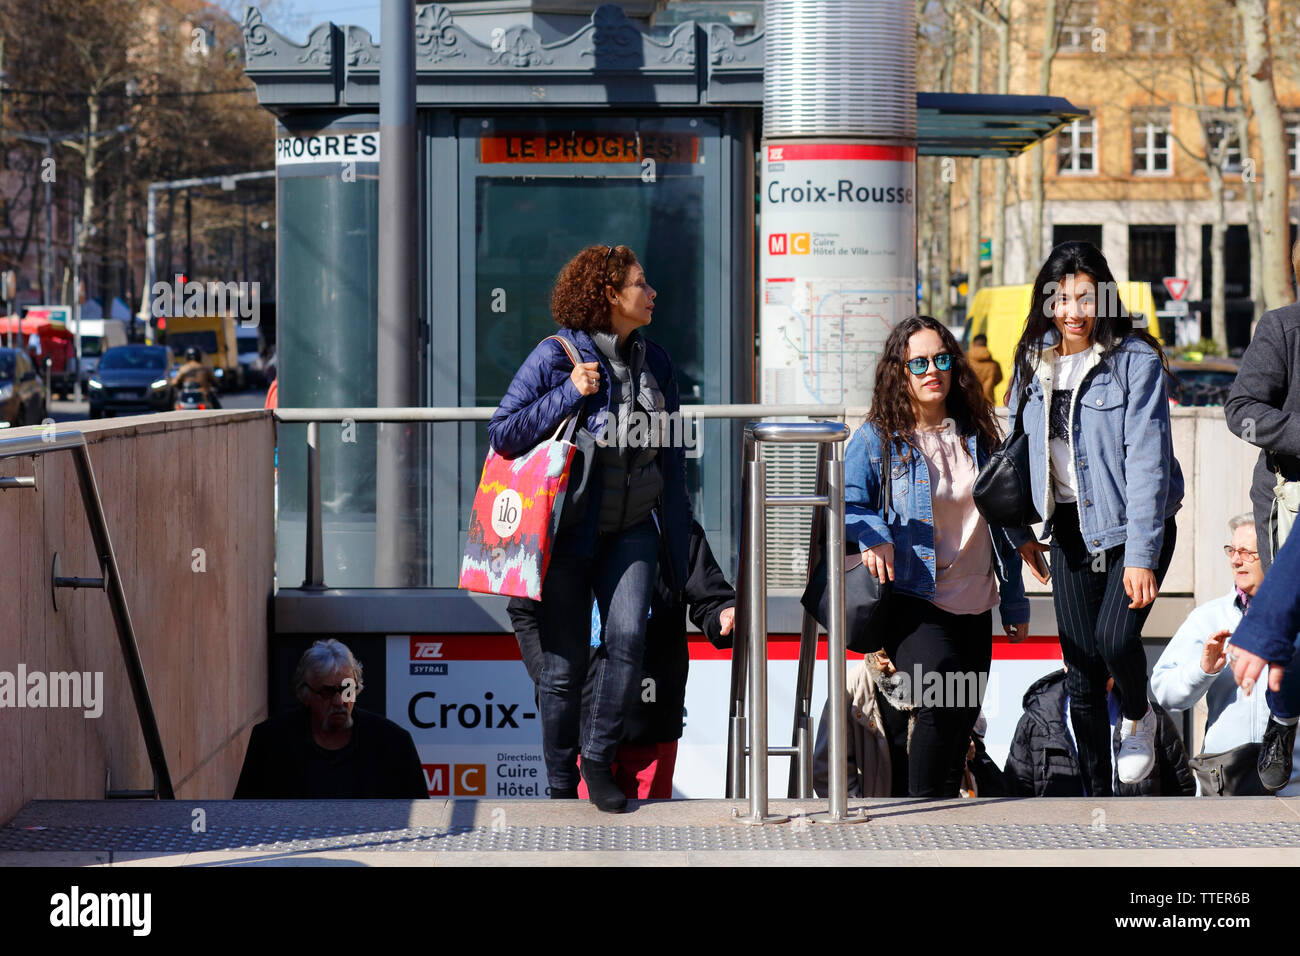 Week-end shopping et sensations fortes à la Croix Rousse, Lyon, France Banque D'Images